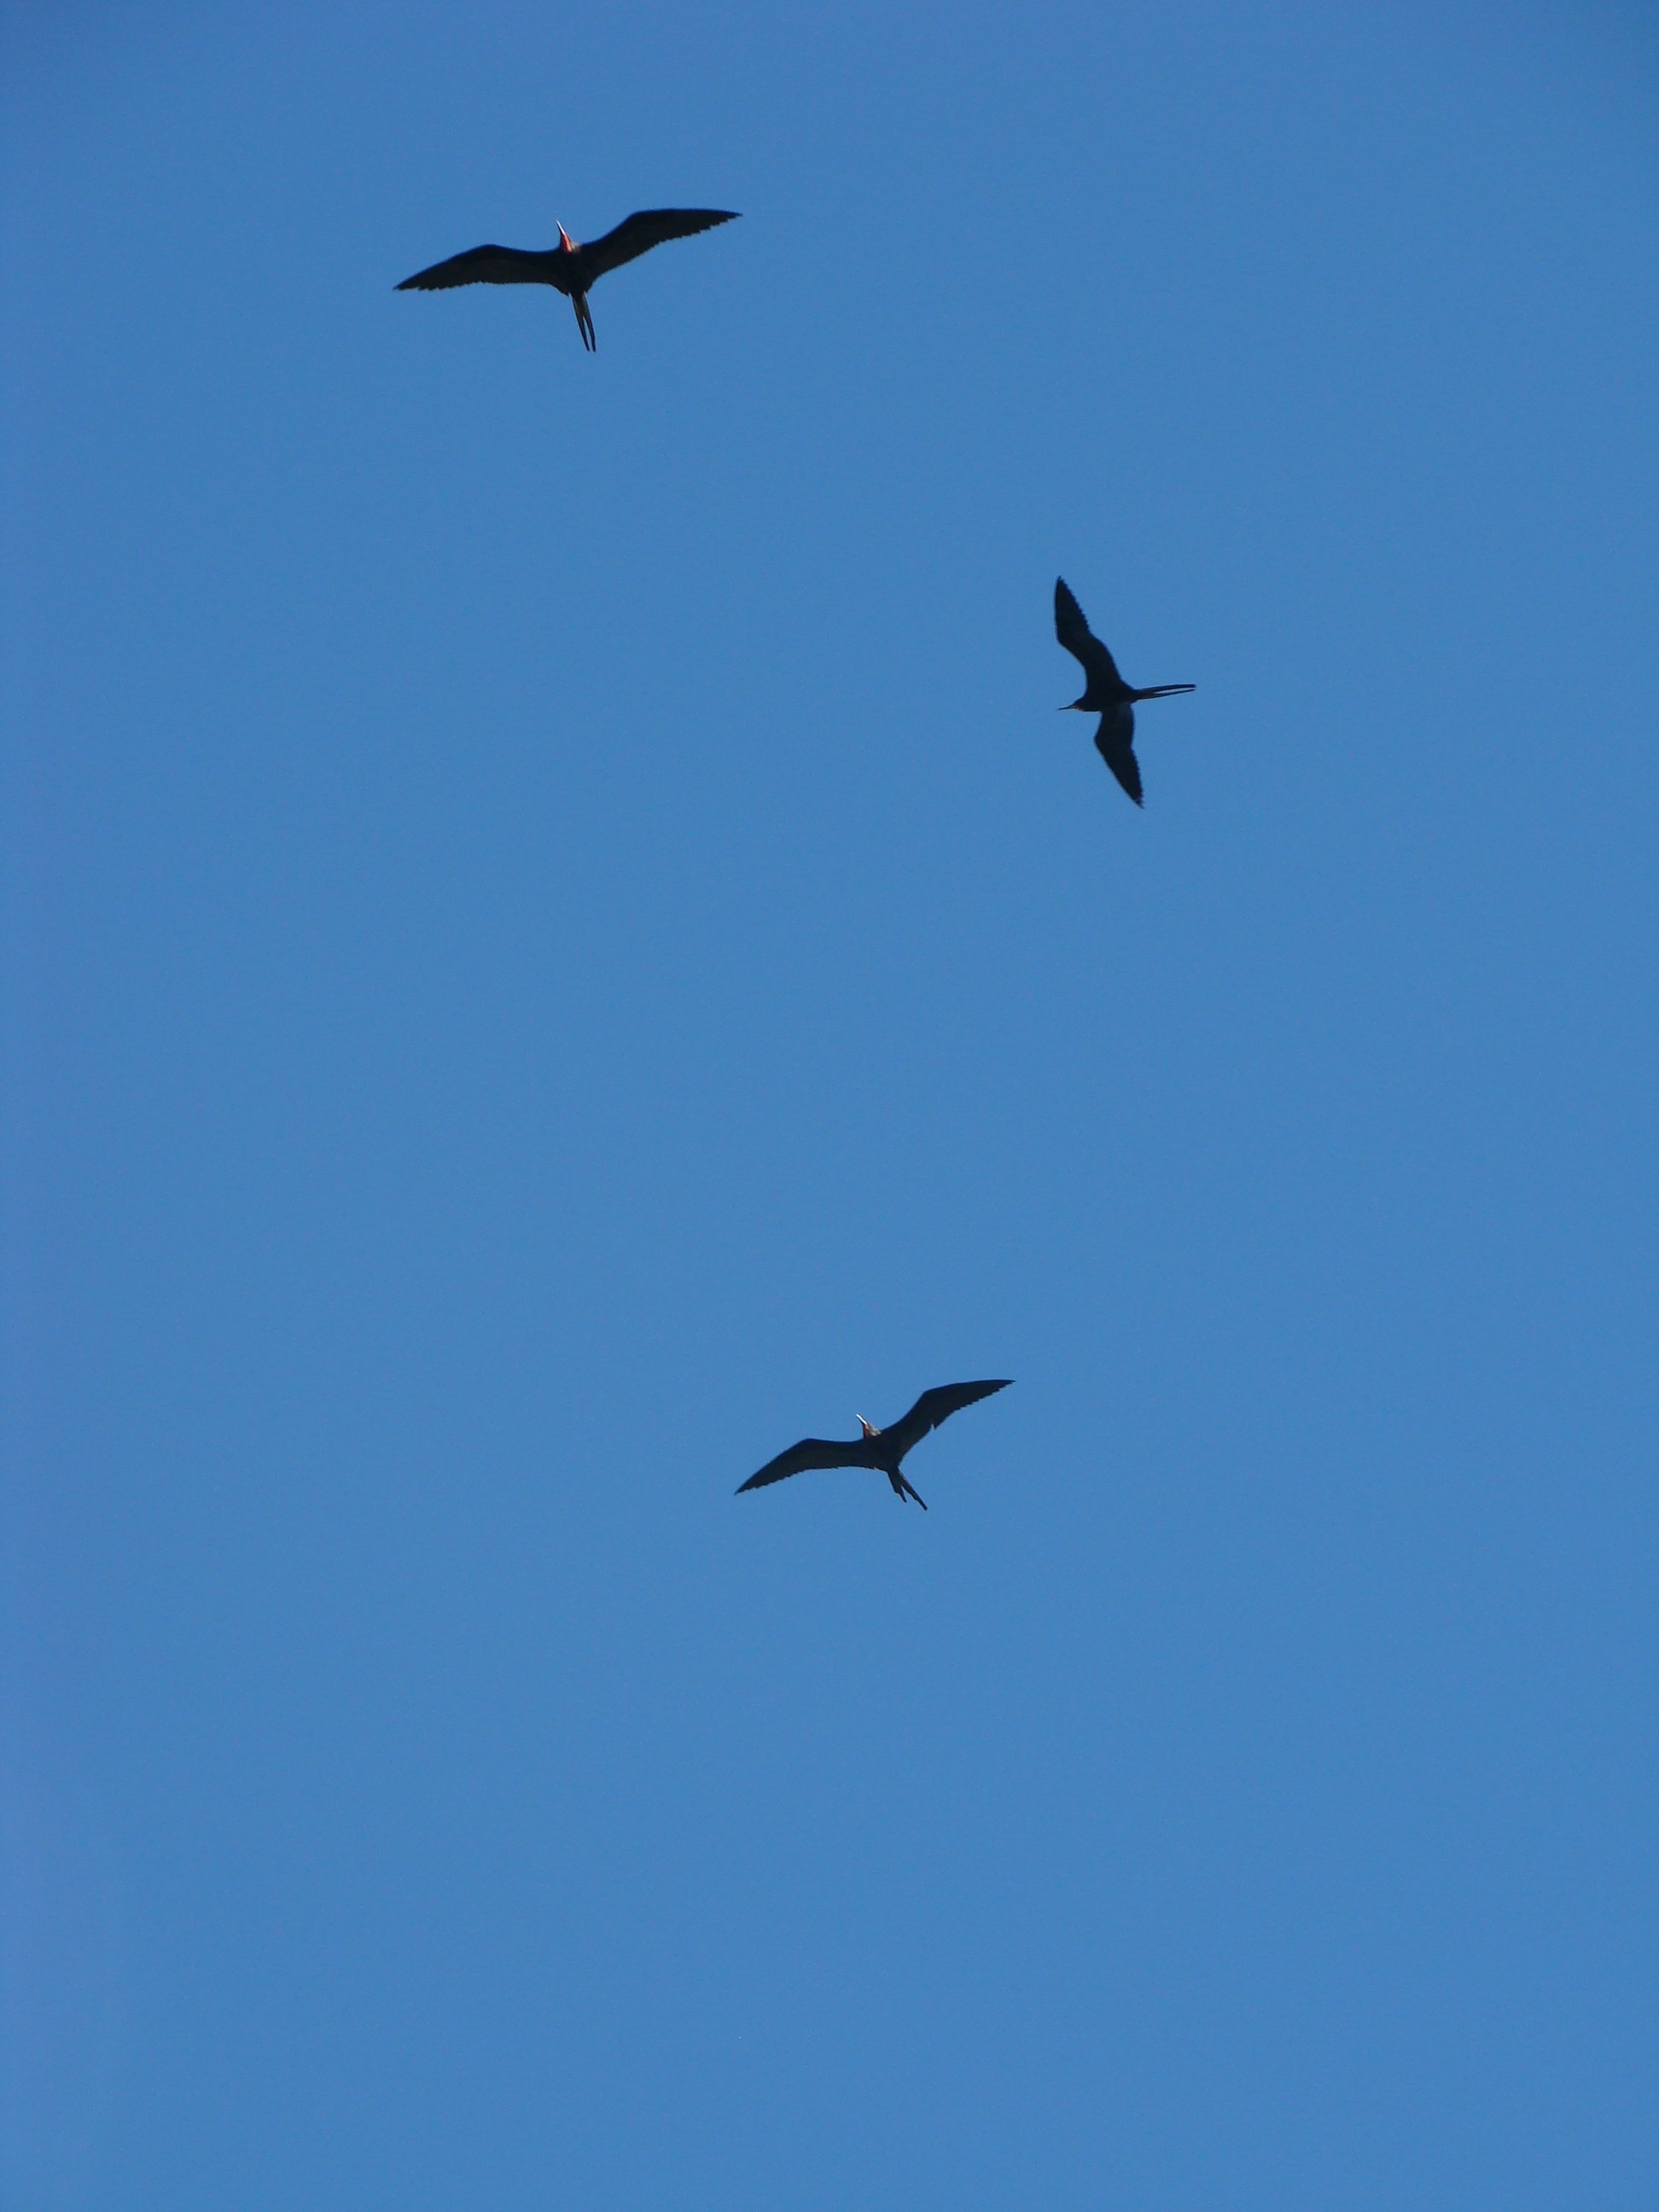 3 black bird